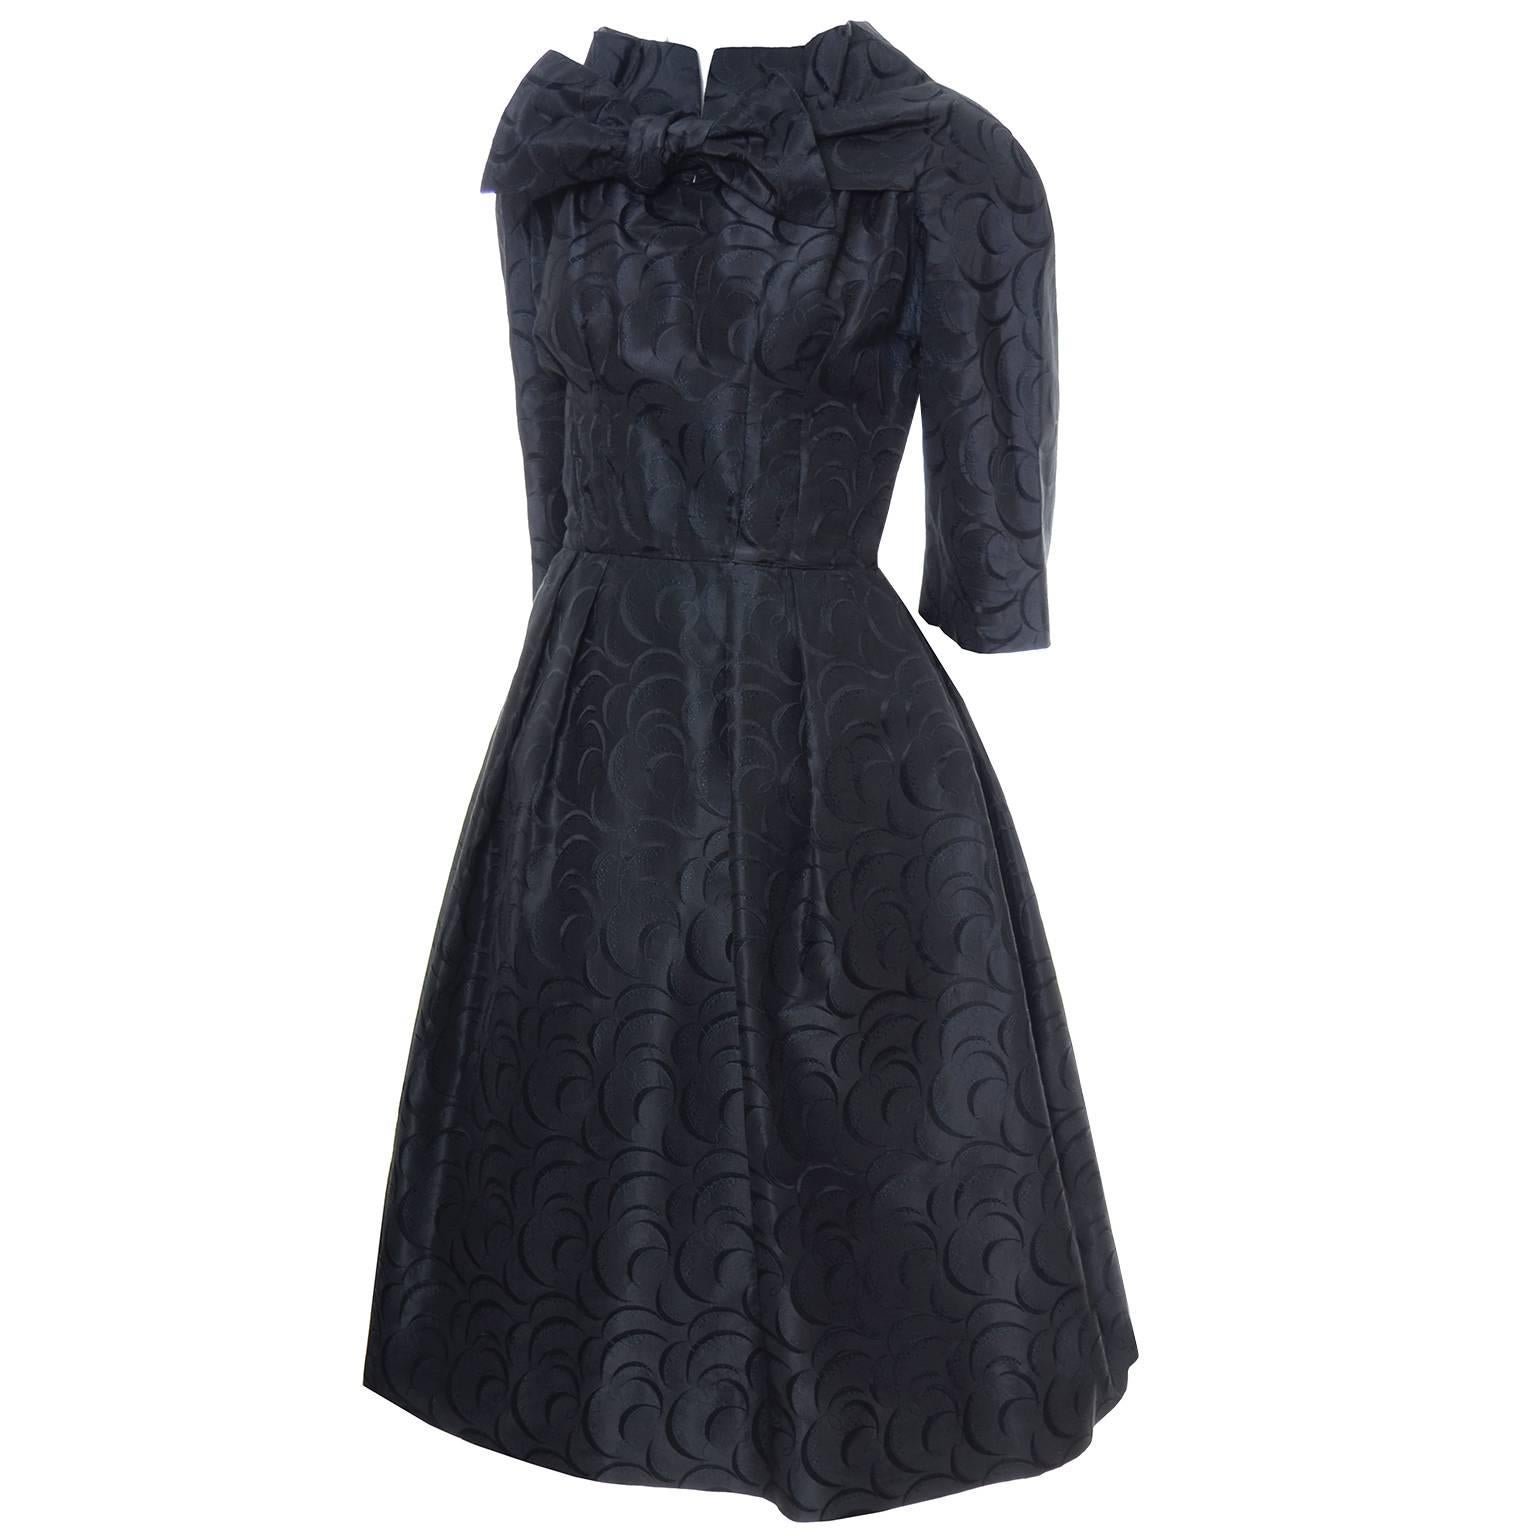 Werle Beverly Hills 1950's Vintage Dress Saks Fifth Avenue Black Patterned Satin 4